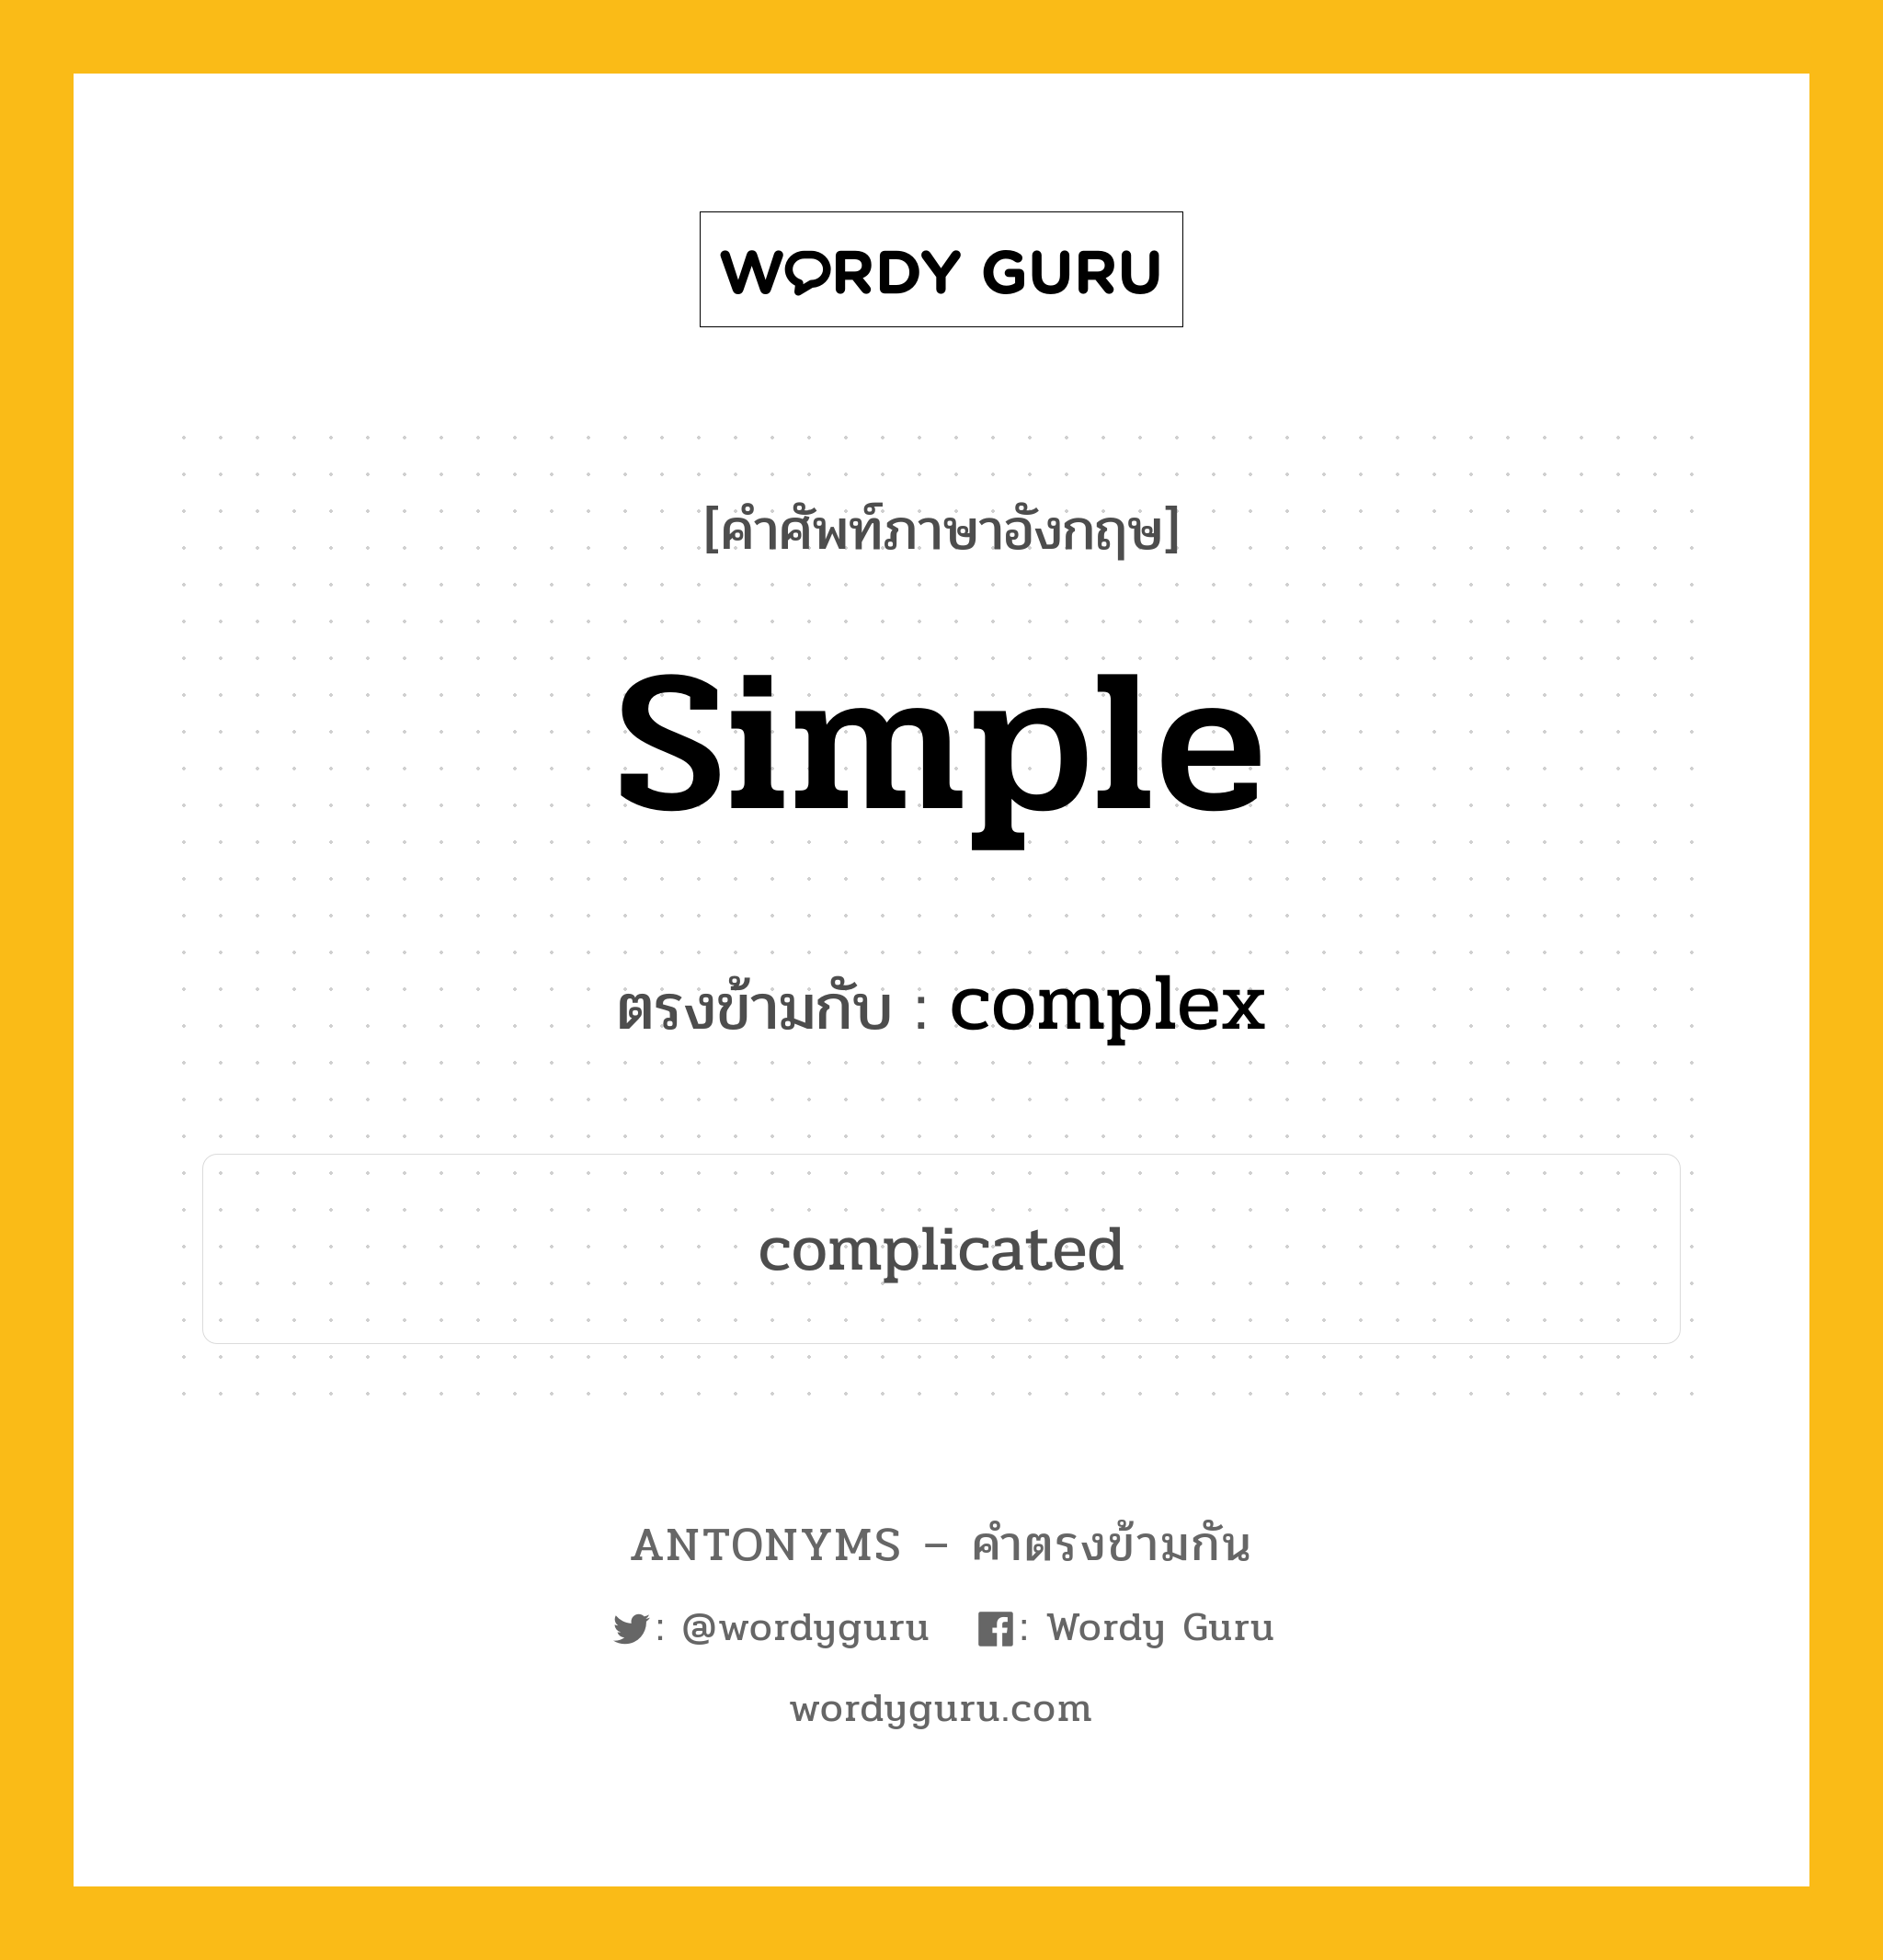 simple เป็นคำตรงข้ามกับคำไหนบ้าง?, คำศัพท์ภาษาอังกฤษ simple ตรงข้ามกับ complex หมวด complex